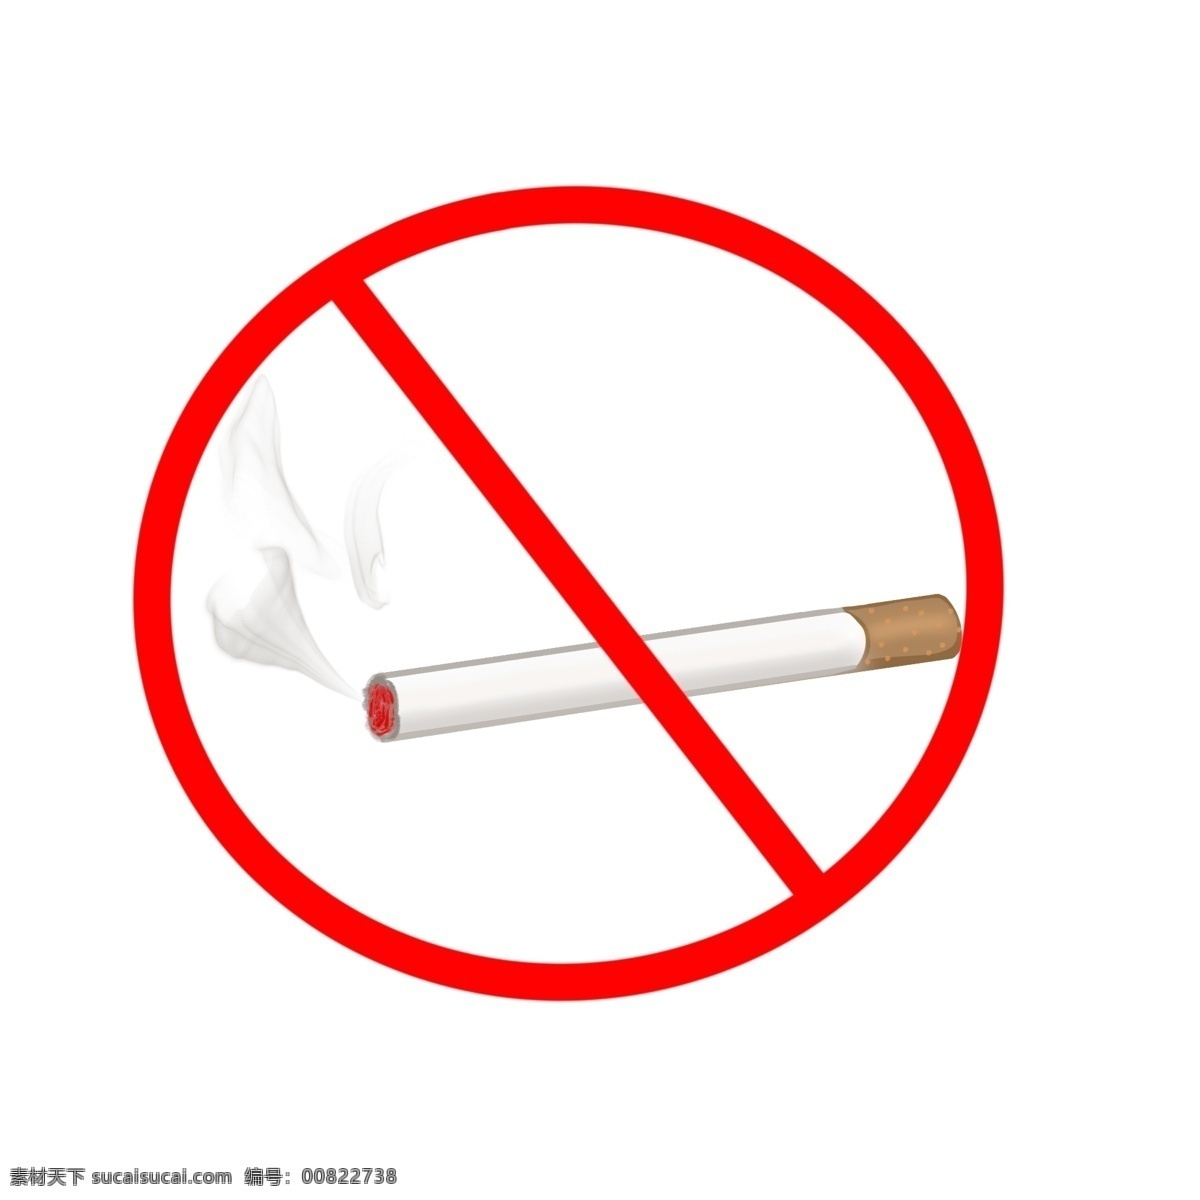 世界 无烟日 禁止 吸烟 标志 禁止吸烟 世界无烟日 禁止吸烟标志 无烟日标志